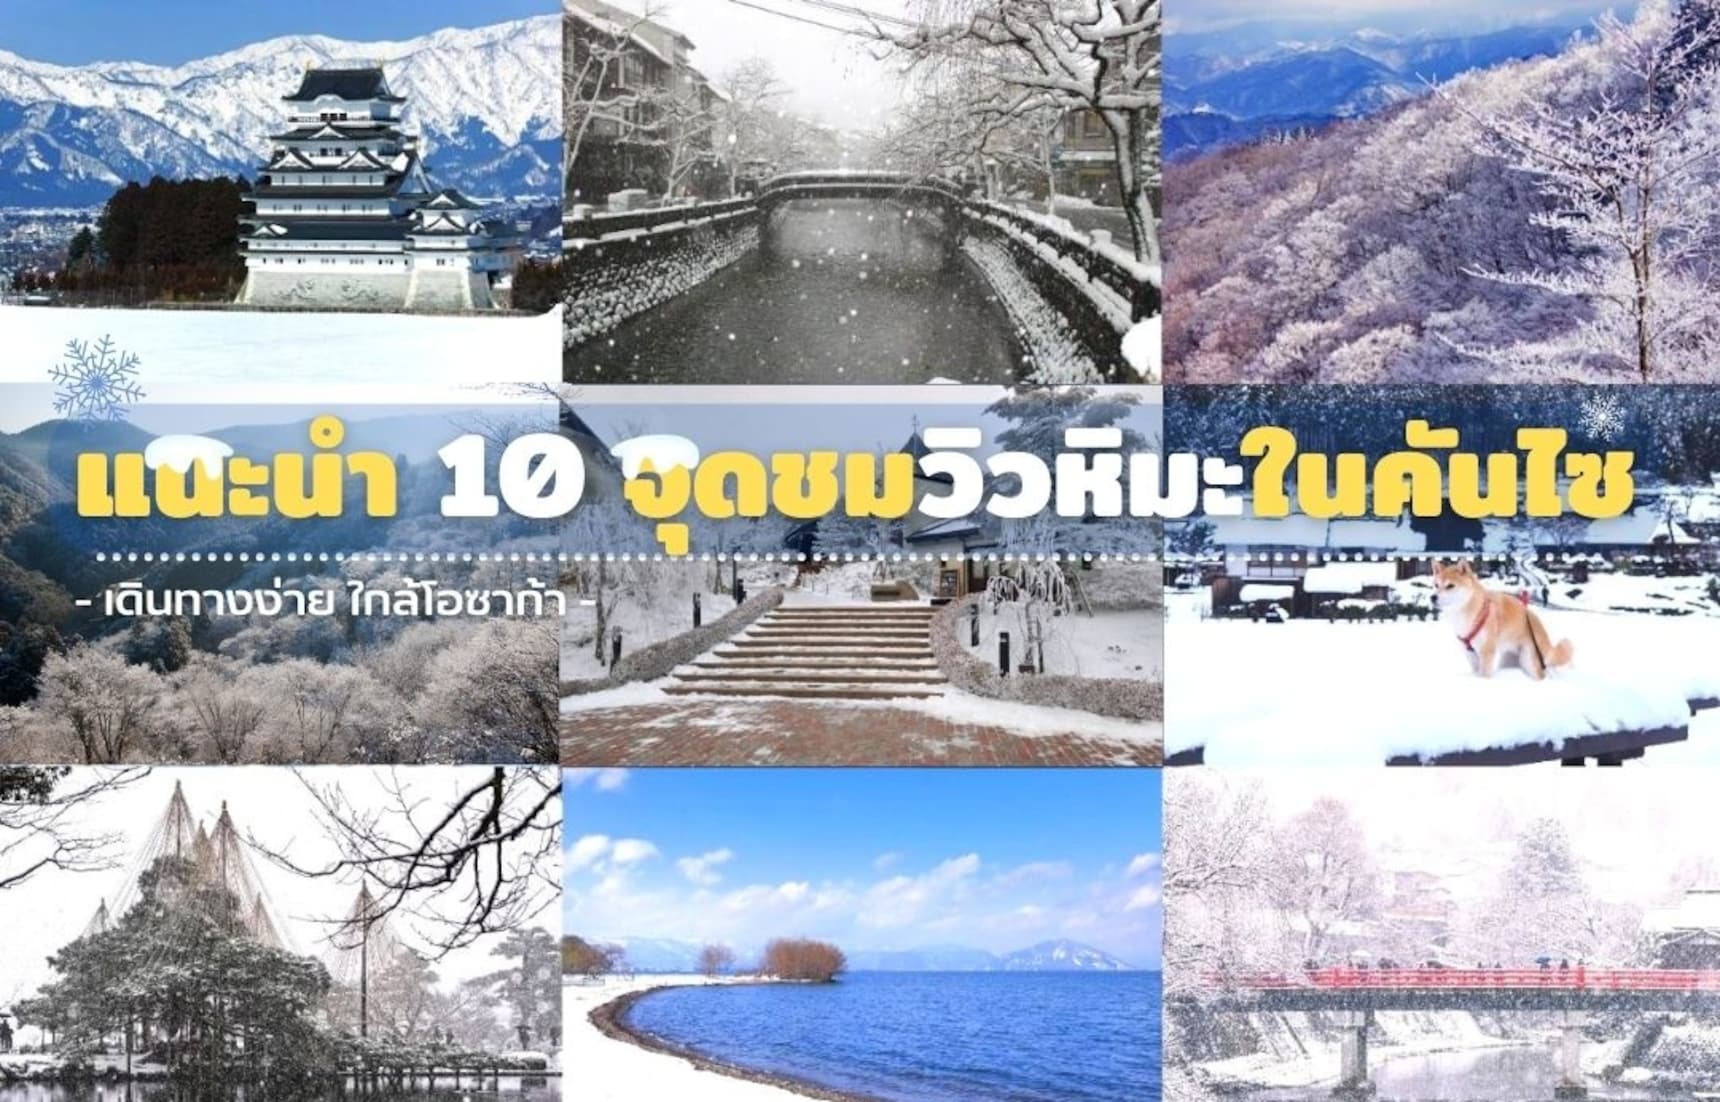 แนะนำ 10 จุดชมวิวหิมะสุดอลังการใกล้โอซาก้า ในแถบคันไซ! | All About Japan